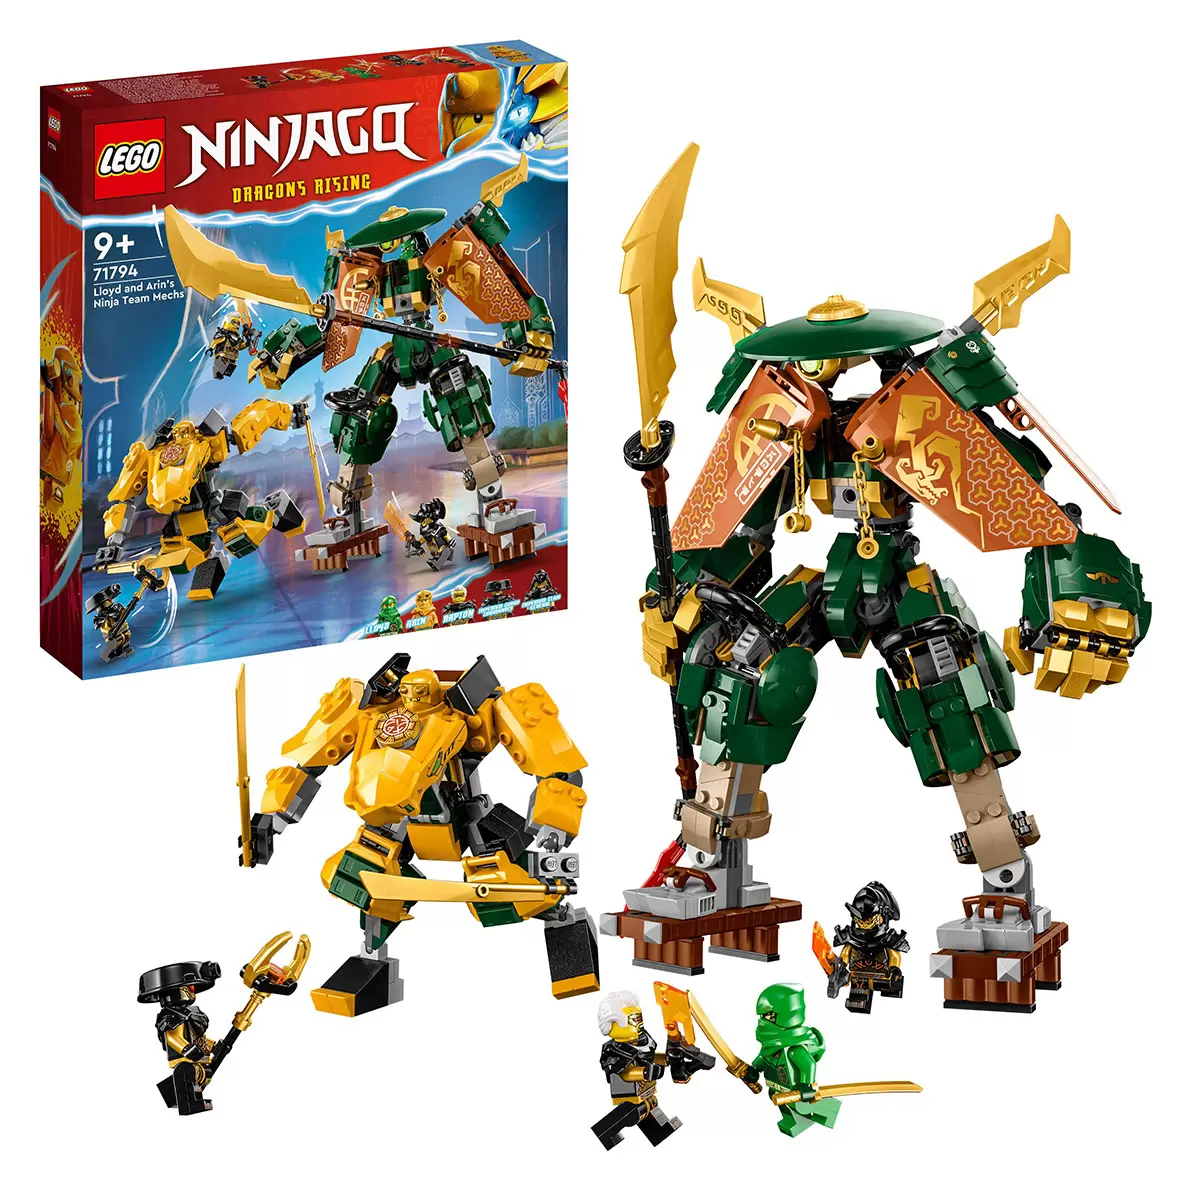 LEGO Ninjago Lloyd and Arin's Ninja Team Mechs 71794